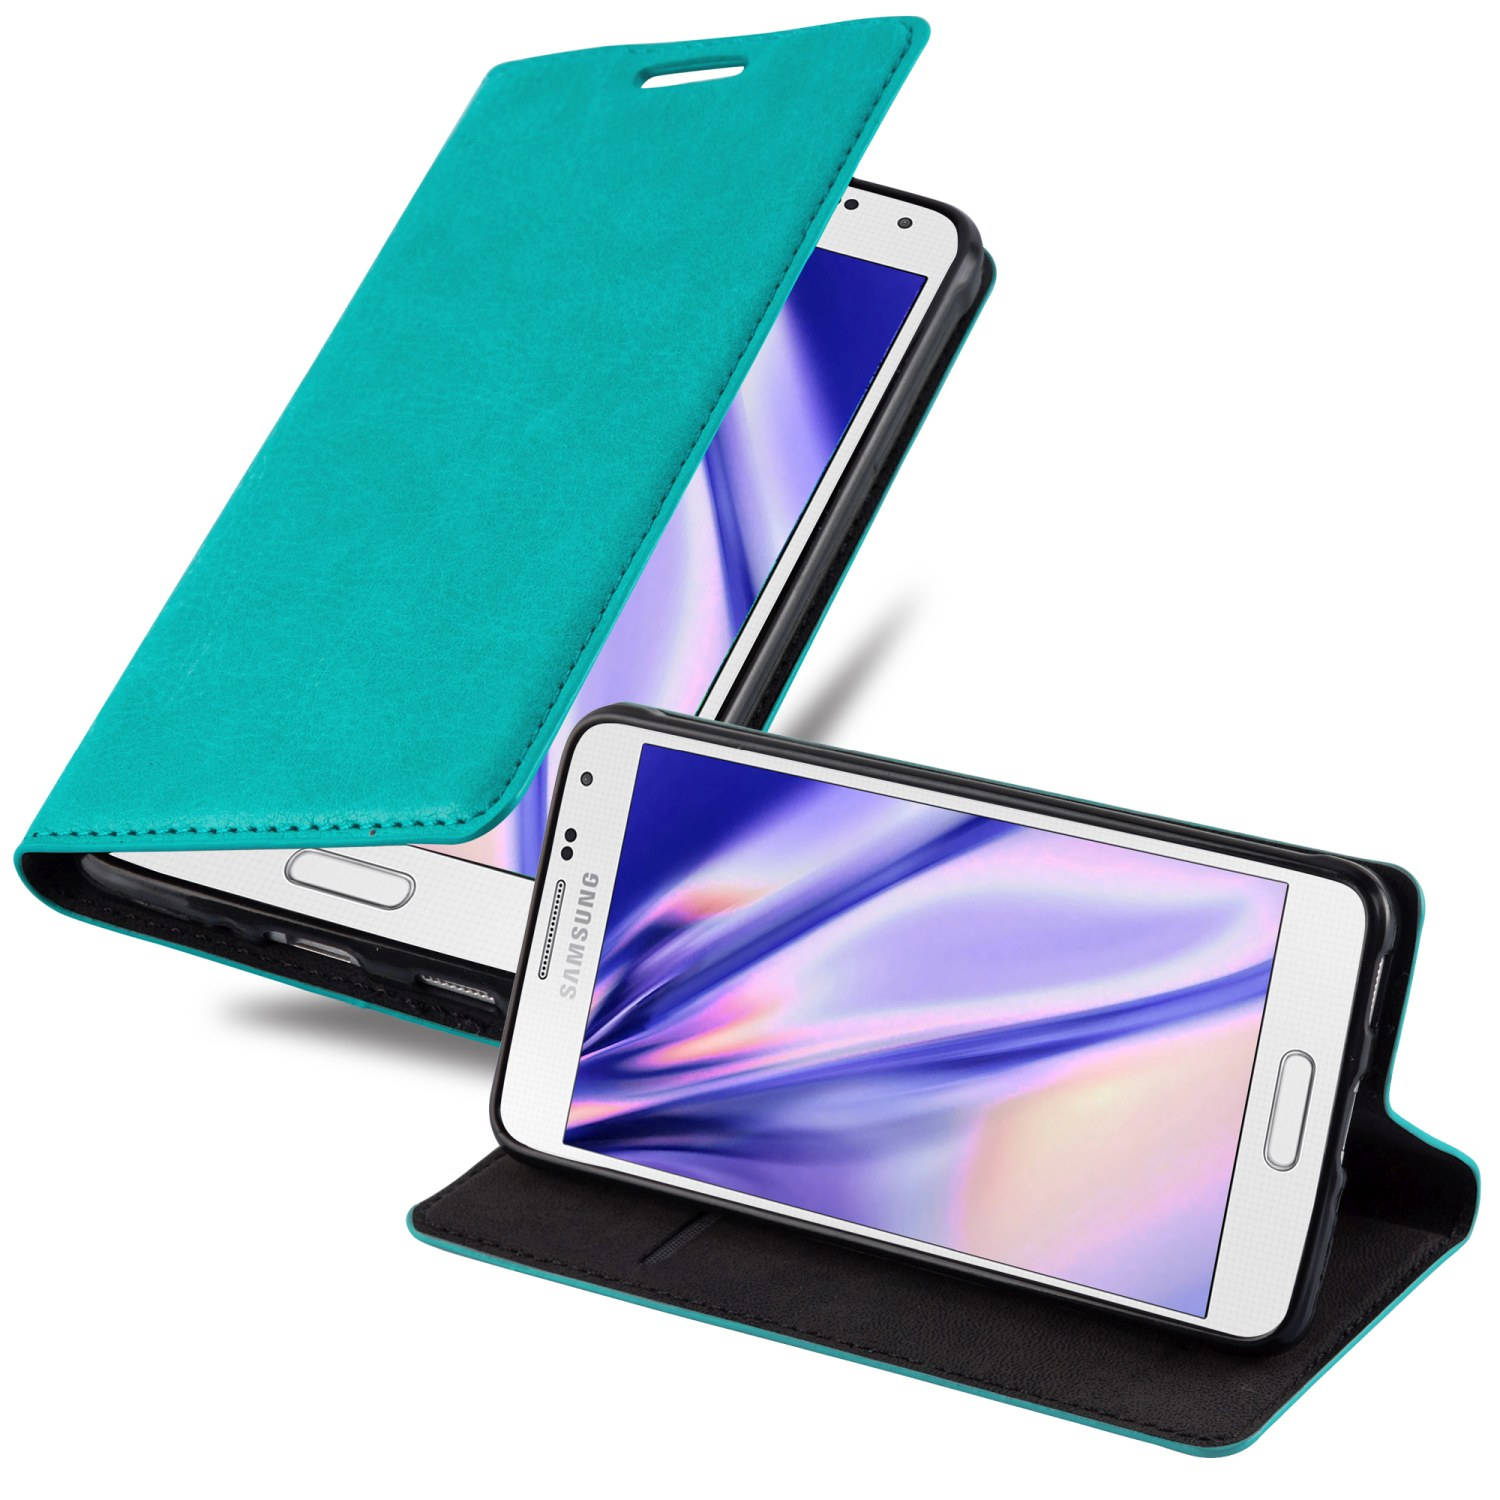 Cadorabo Hoesje voor Samsung Galaxy ALPHA in BENZINE TURKOOIS - Beschermend etui met magnetische sluiting